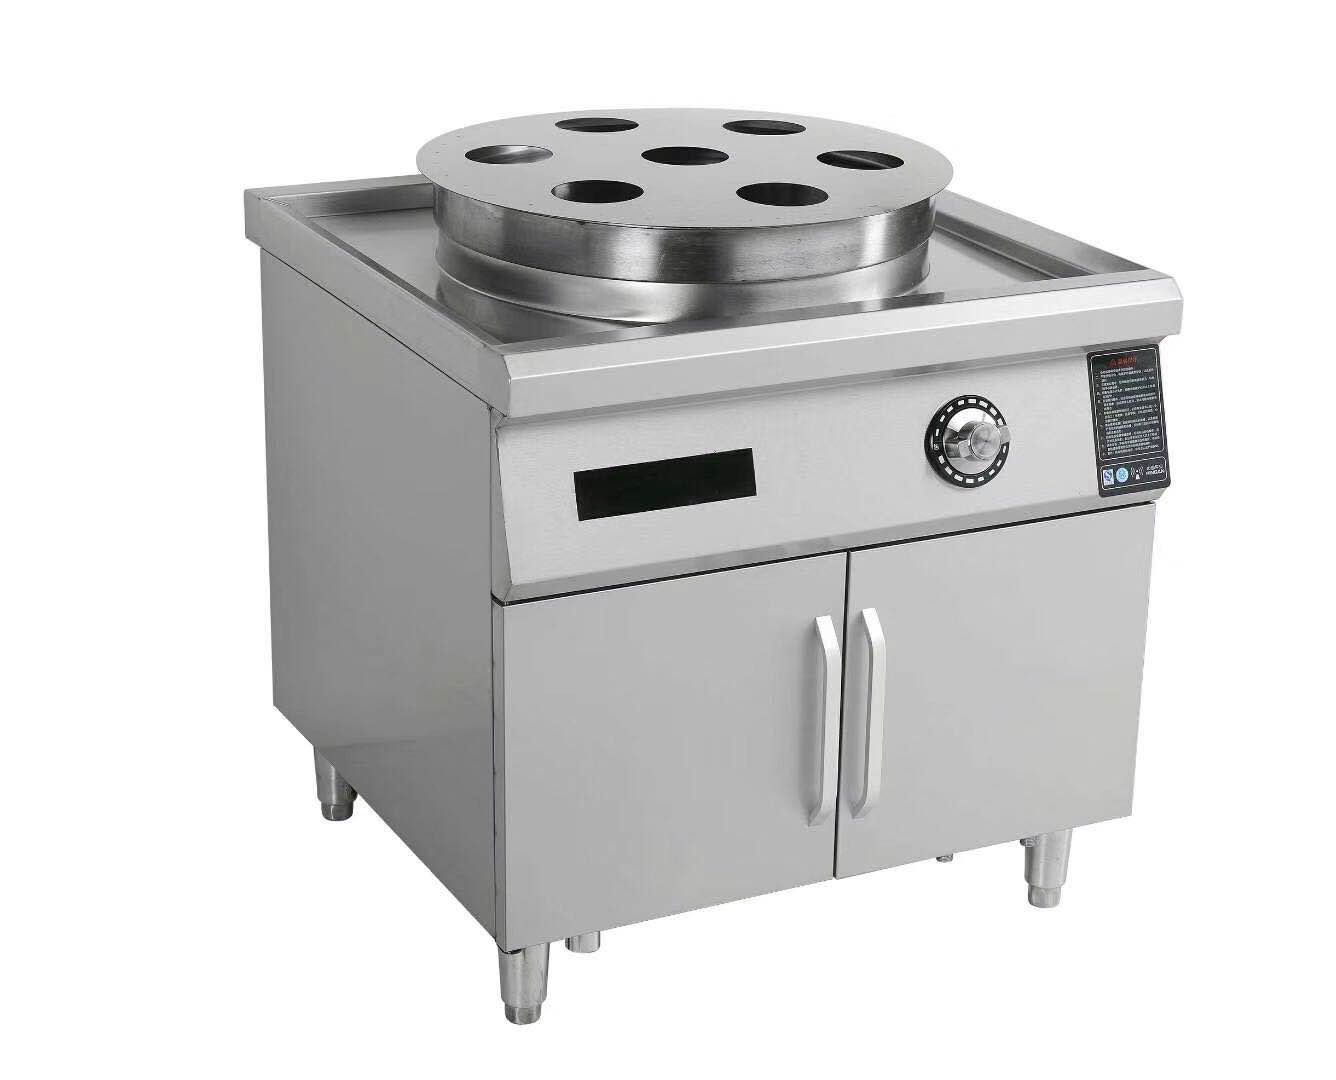 电磁蒸包炉电器,商用厨房设备直销价钱-北京天辰浩淼厨房设备